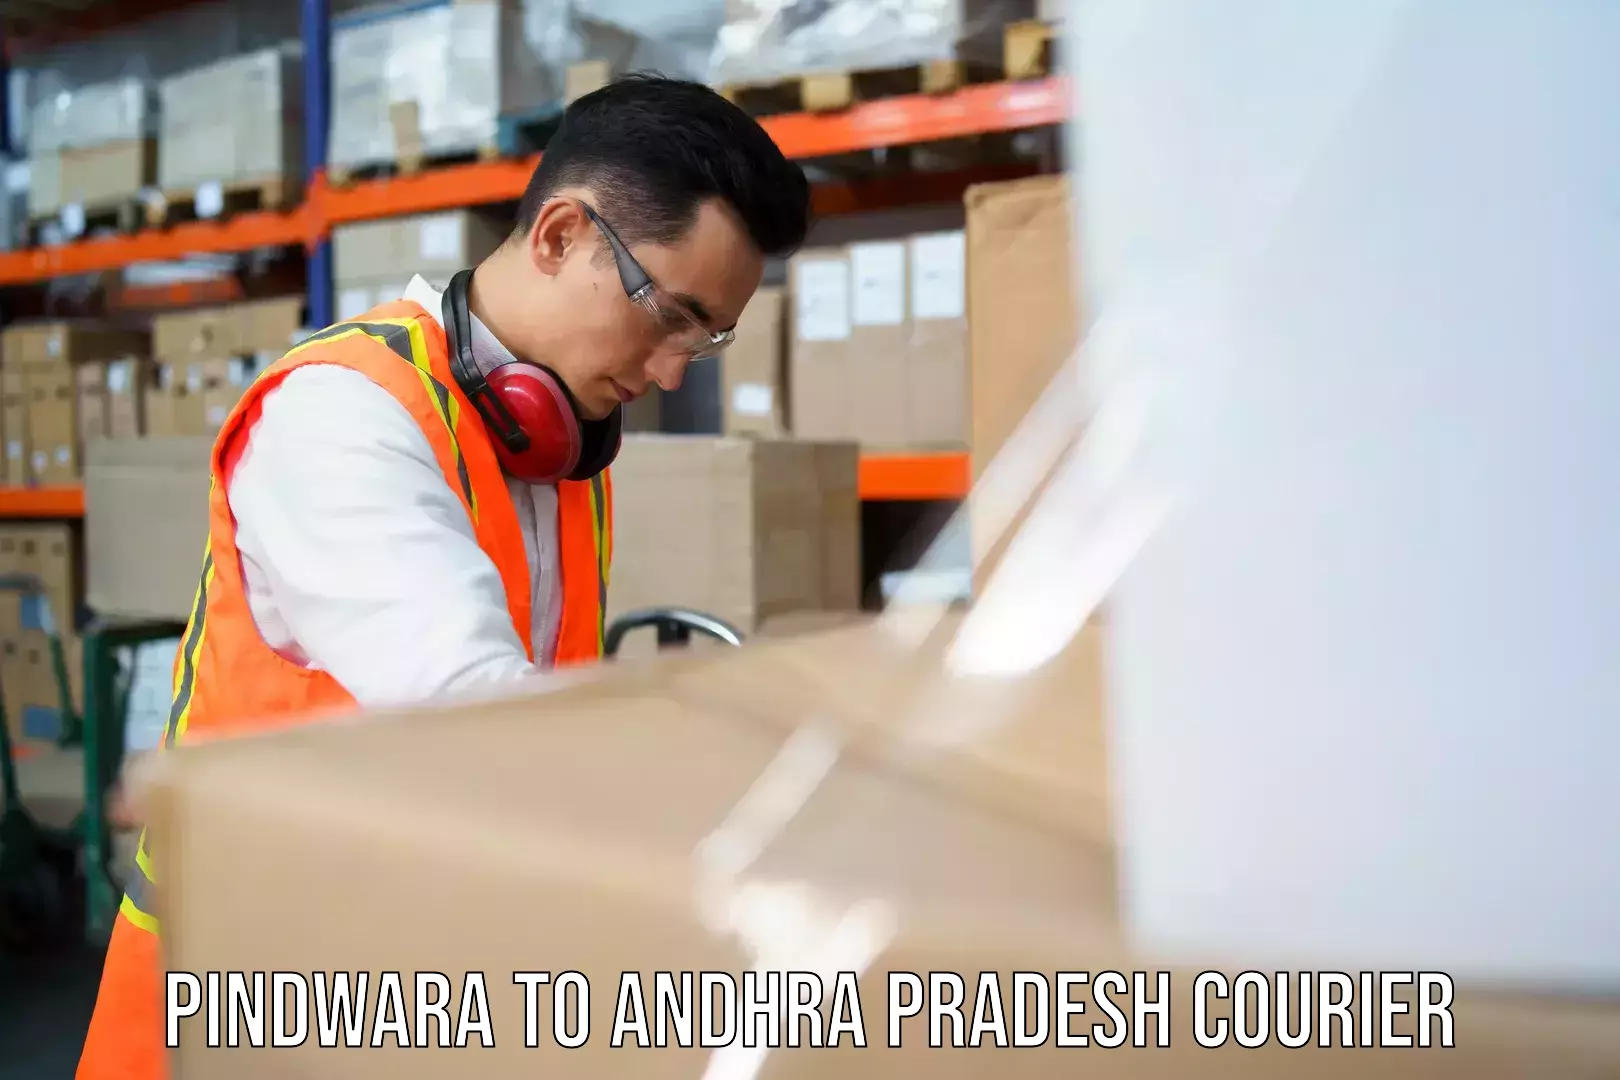 Sustainable shipping practices Pindwara to Andhra Pradesh